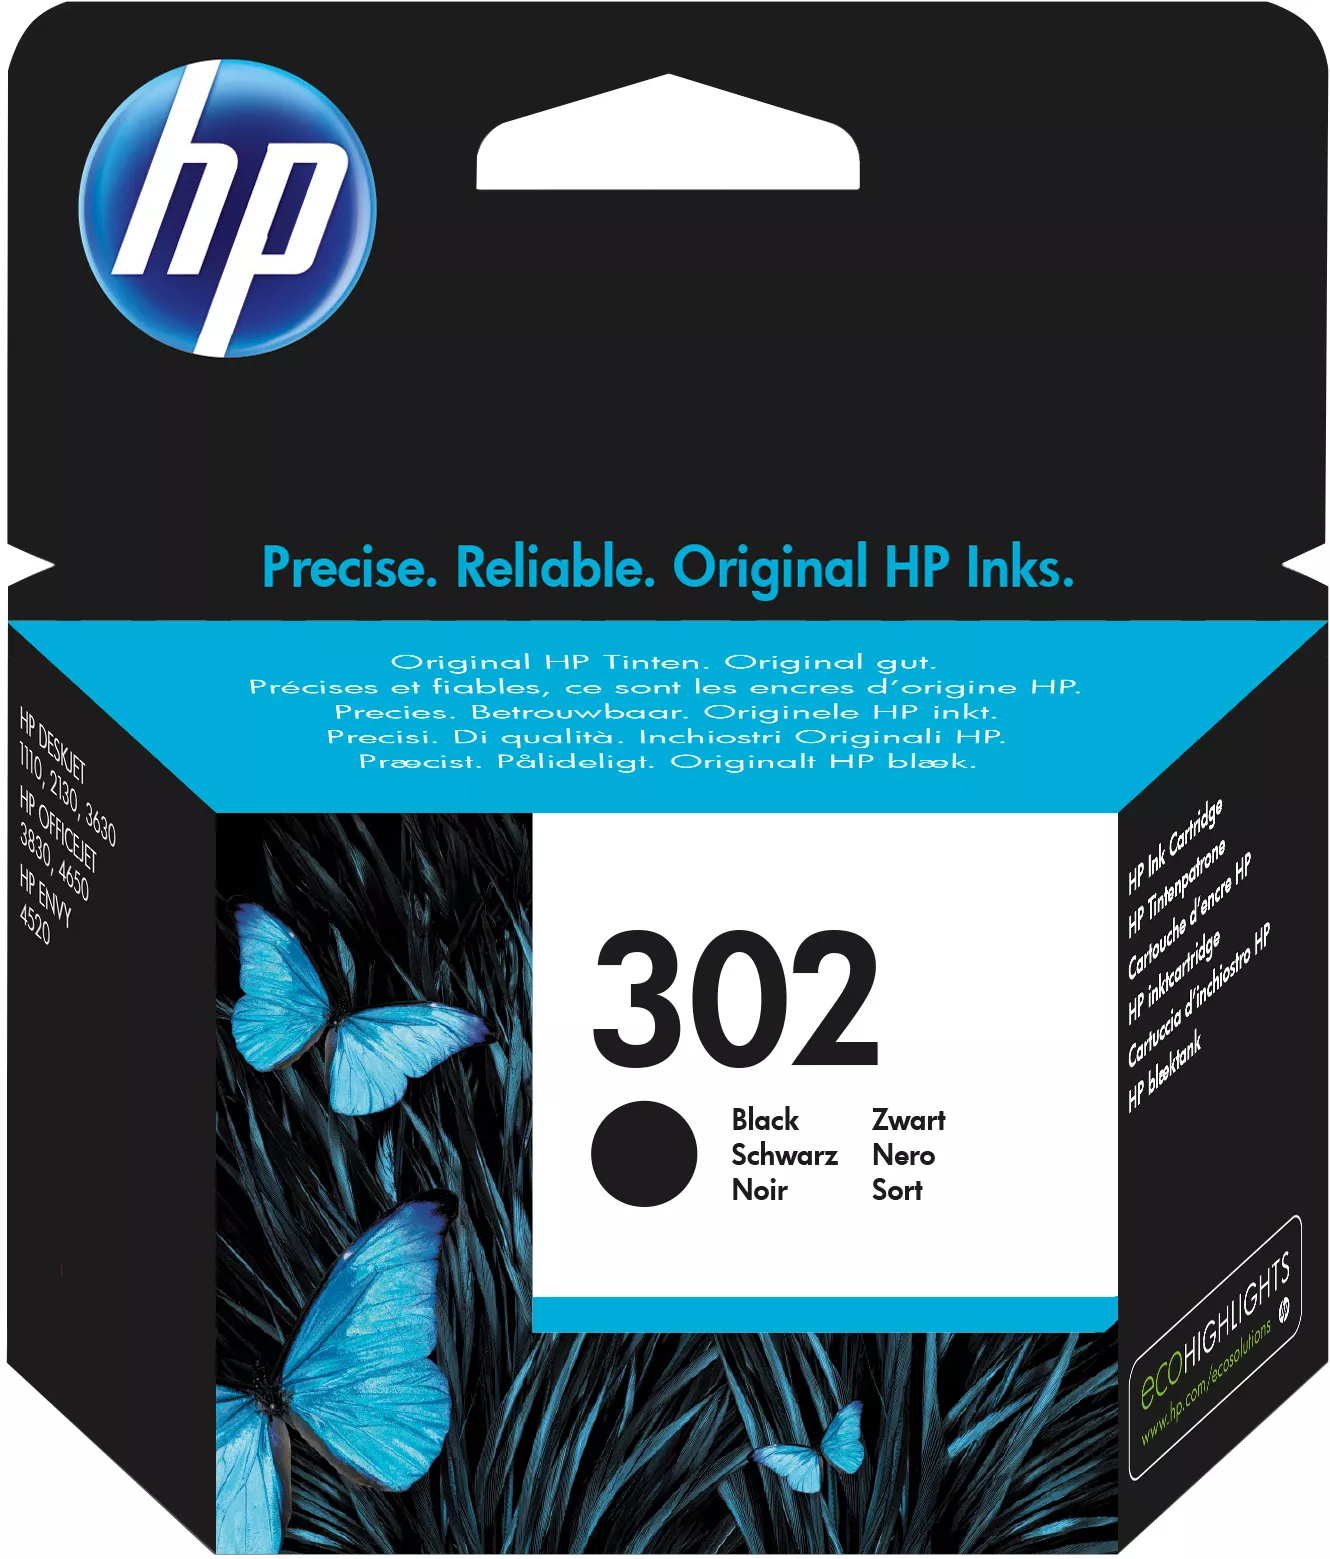 Achat HP 302 original Black Ink cartridge F6U66AE 301Blister au meilleur prix